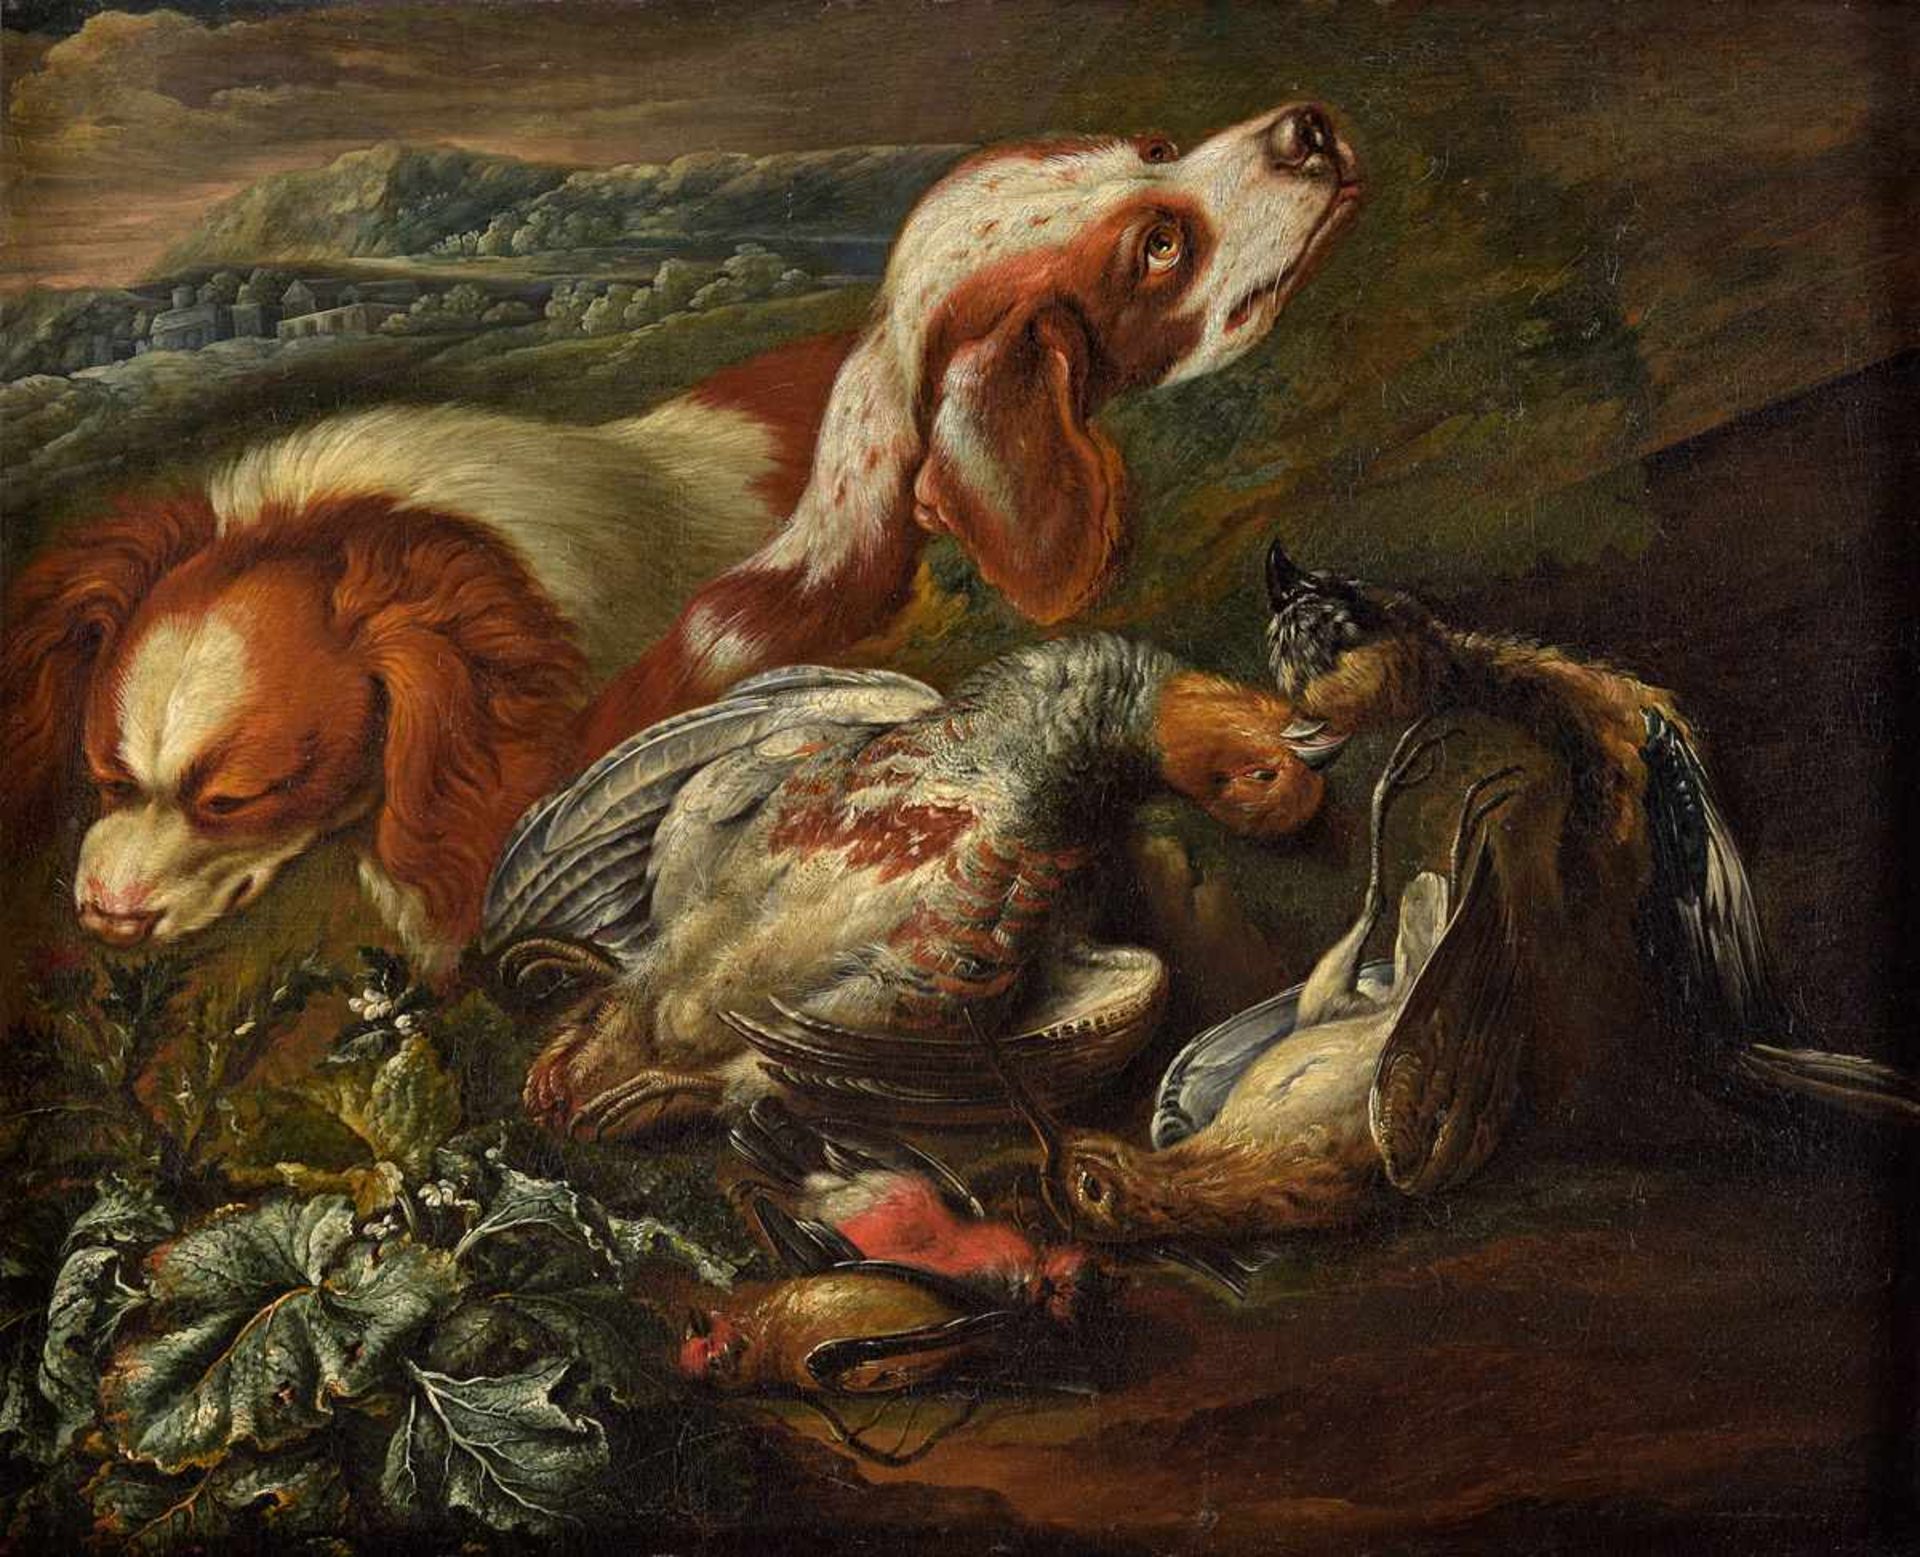 Italienischer Meister 17./18. Jhdt.Jagdstillleben mit Hunden.Öl/Lwd./doubl., 55 x 70 cm.